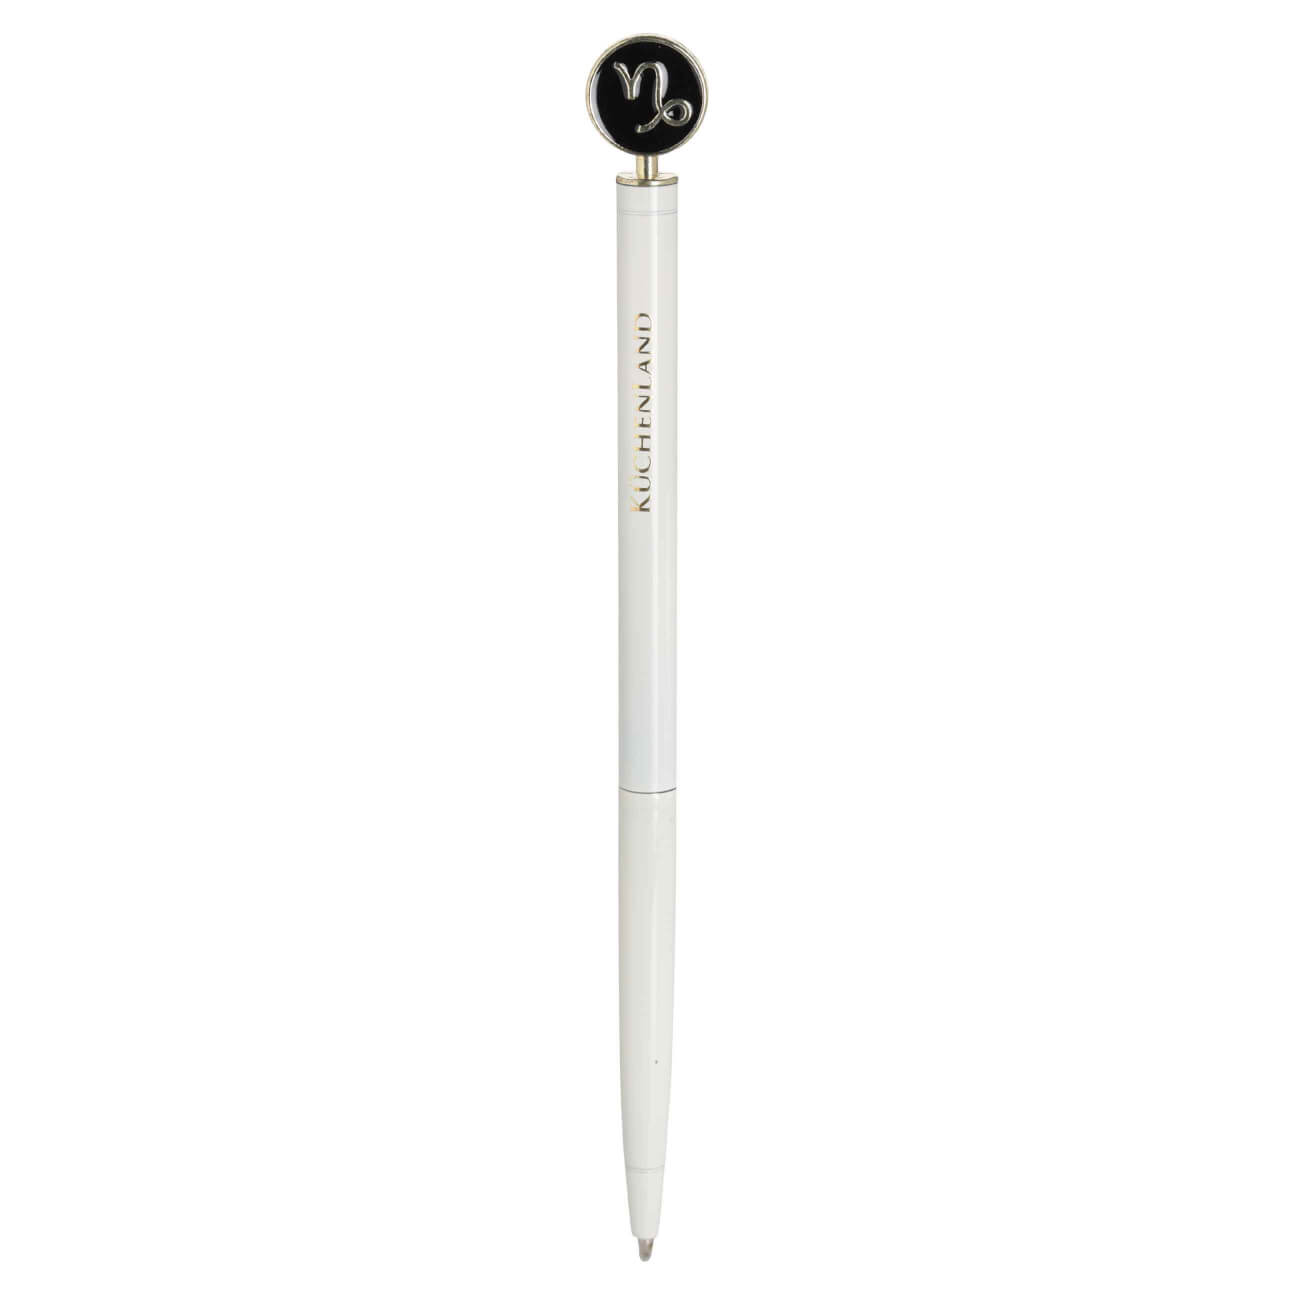 Ручка шариковая, 15 см, с фигуркой, сталь, молочно-золотистая, Козерог, Zodiac автоматическая шариковая ручка informat